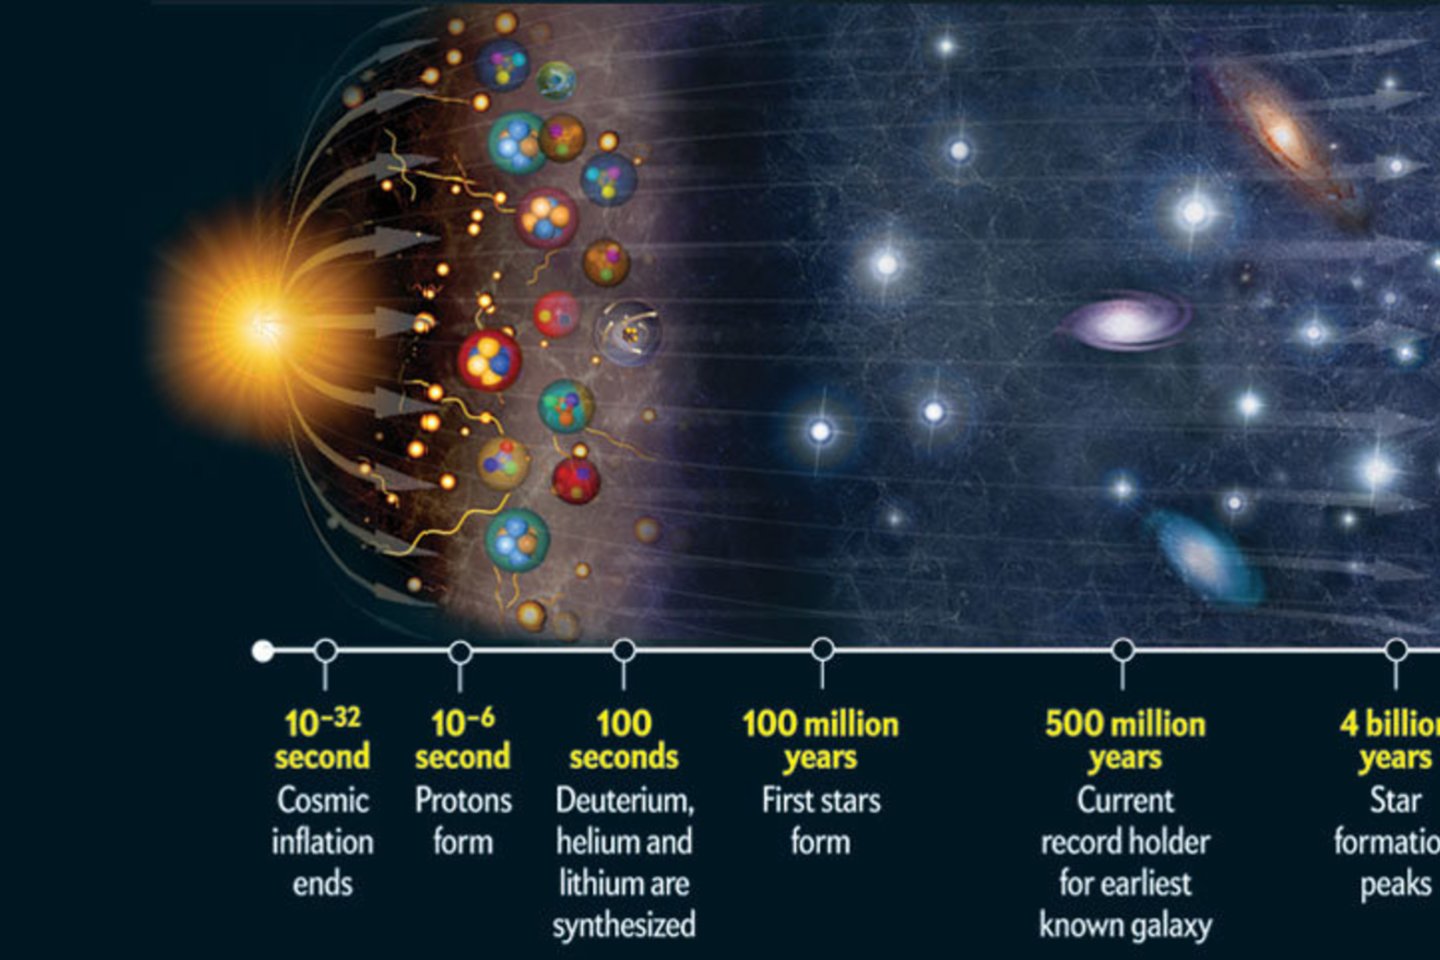 Viena iš daugybės Visatos istorijos schemų, kurių apstu internetuose. Šiame straipsnyje kalbėsime apie tai, kas čia patenka po pirmaisiais trim punktais, tik truputį detaliau.  <br>NASA iliustr. 